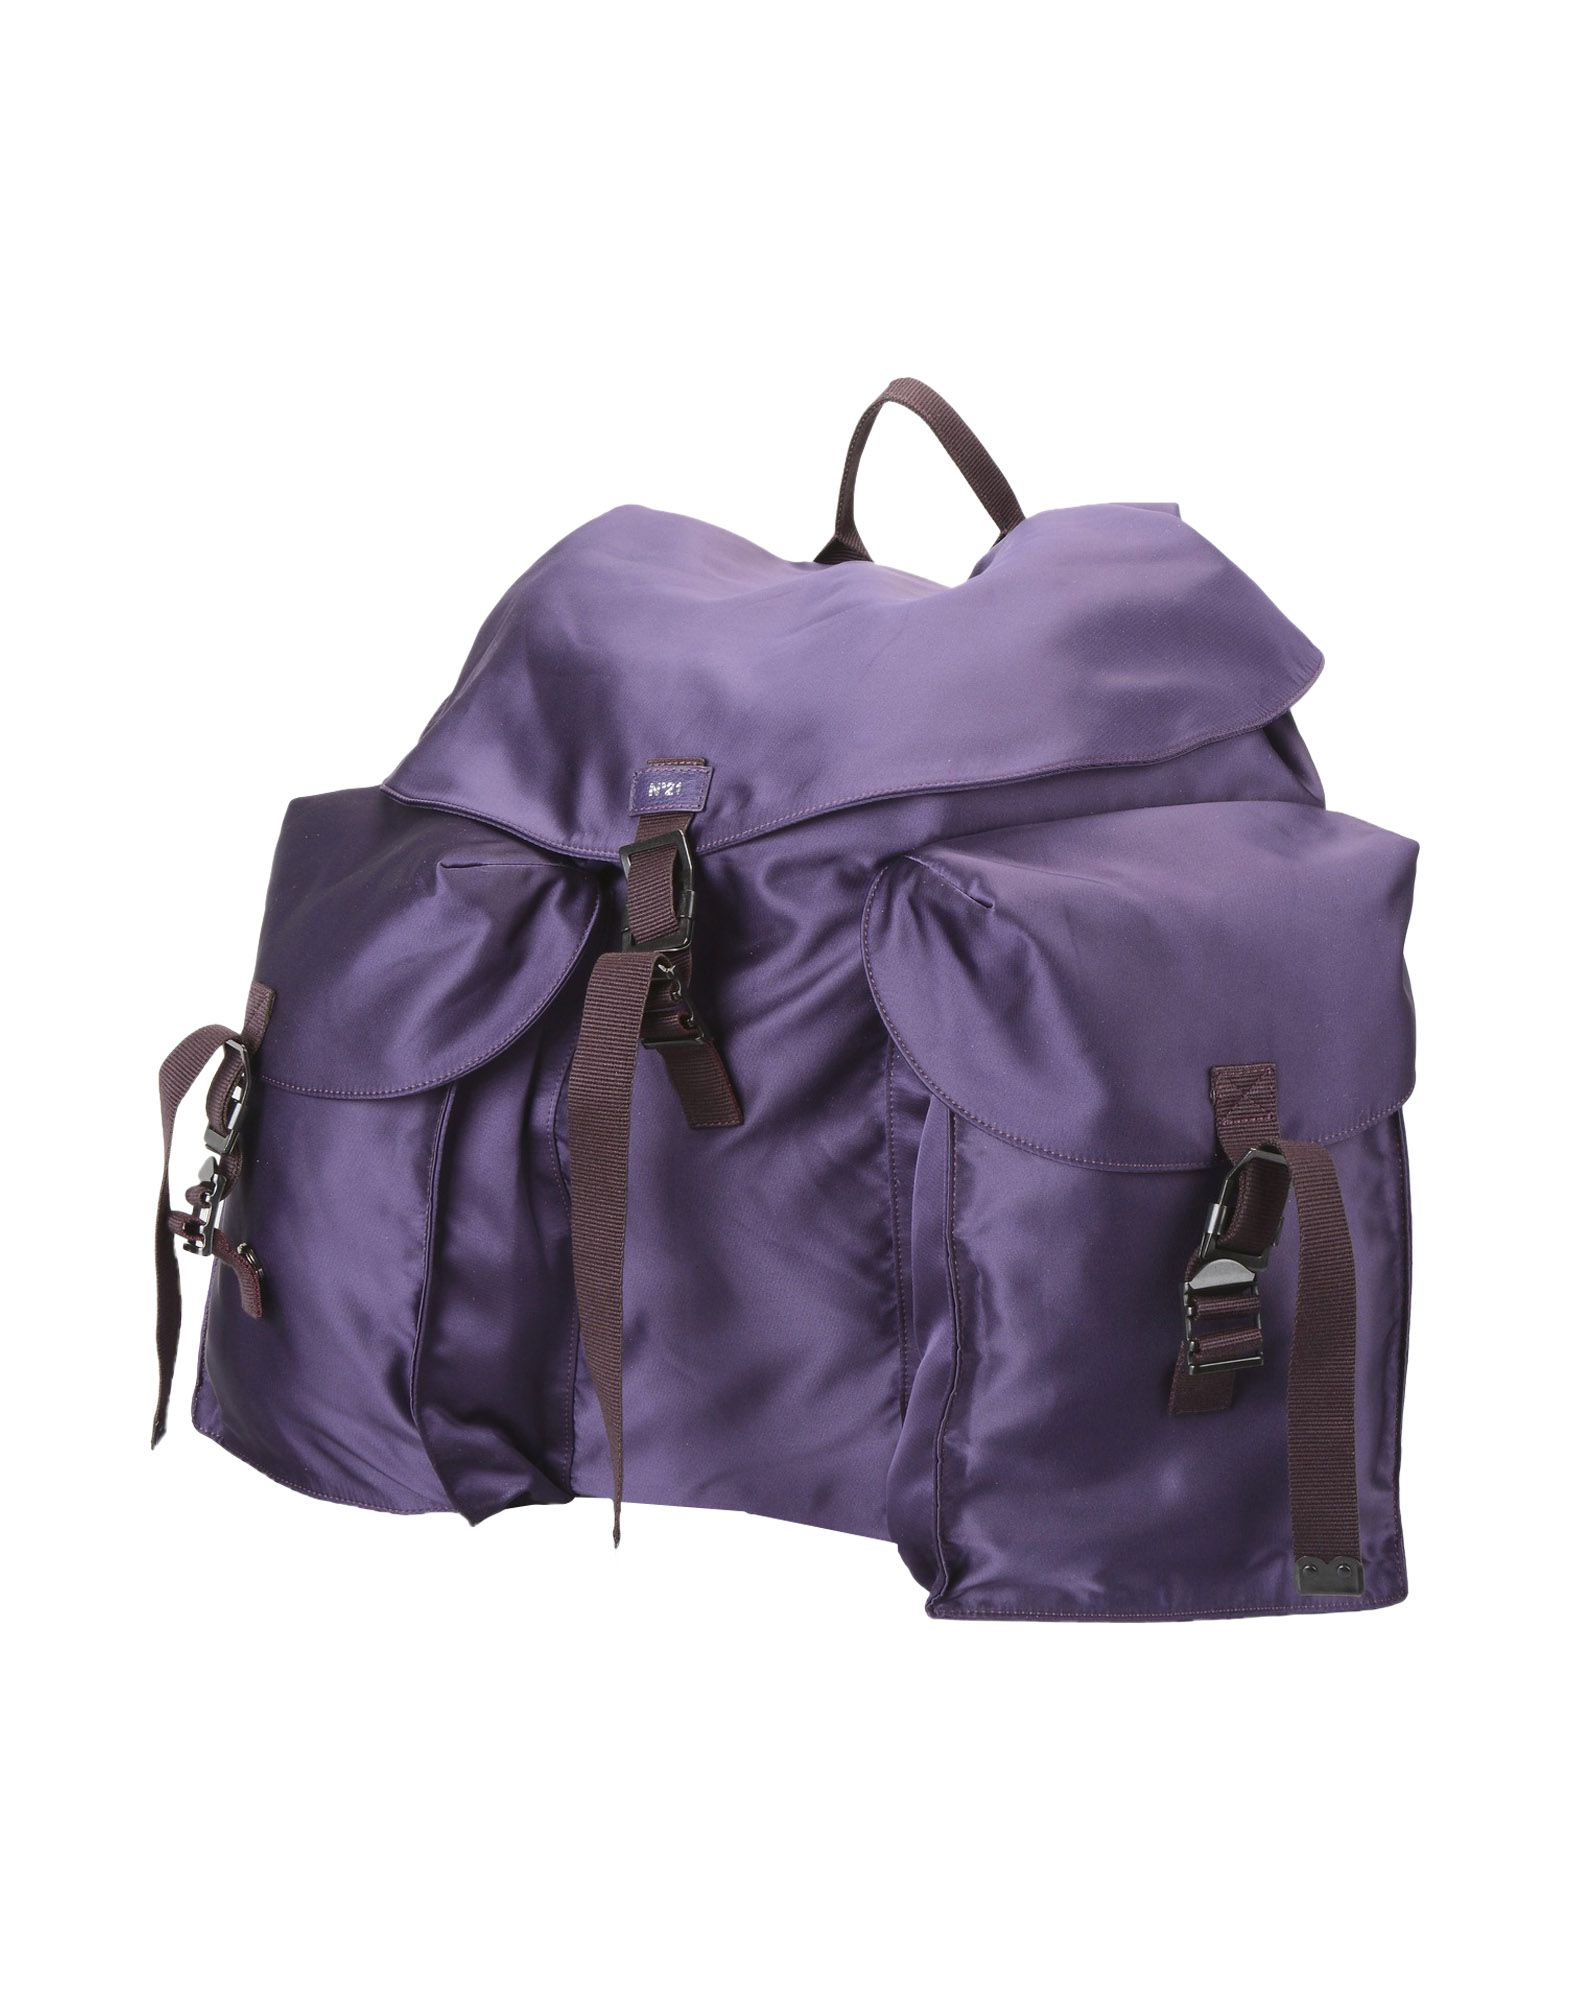 Деловая сумка  - Зеленый,Черный,Фиолетовый цвет